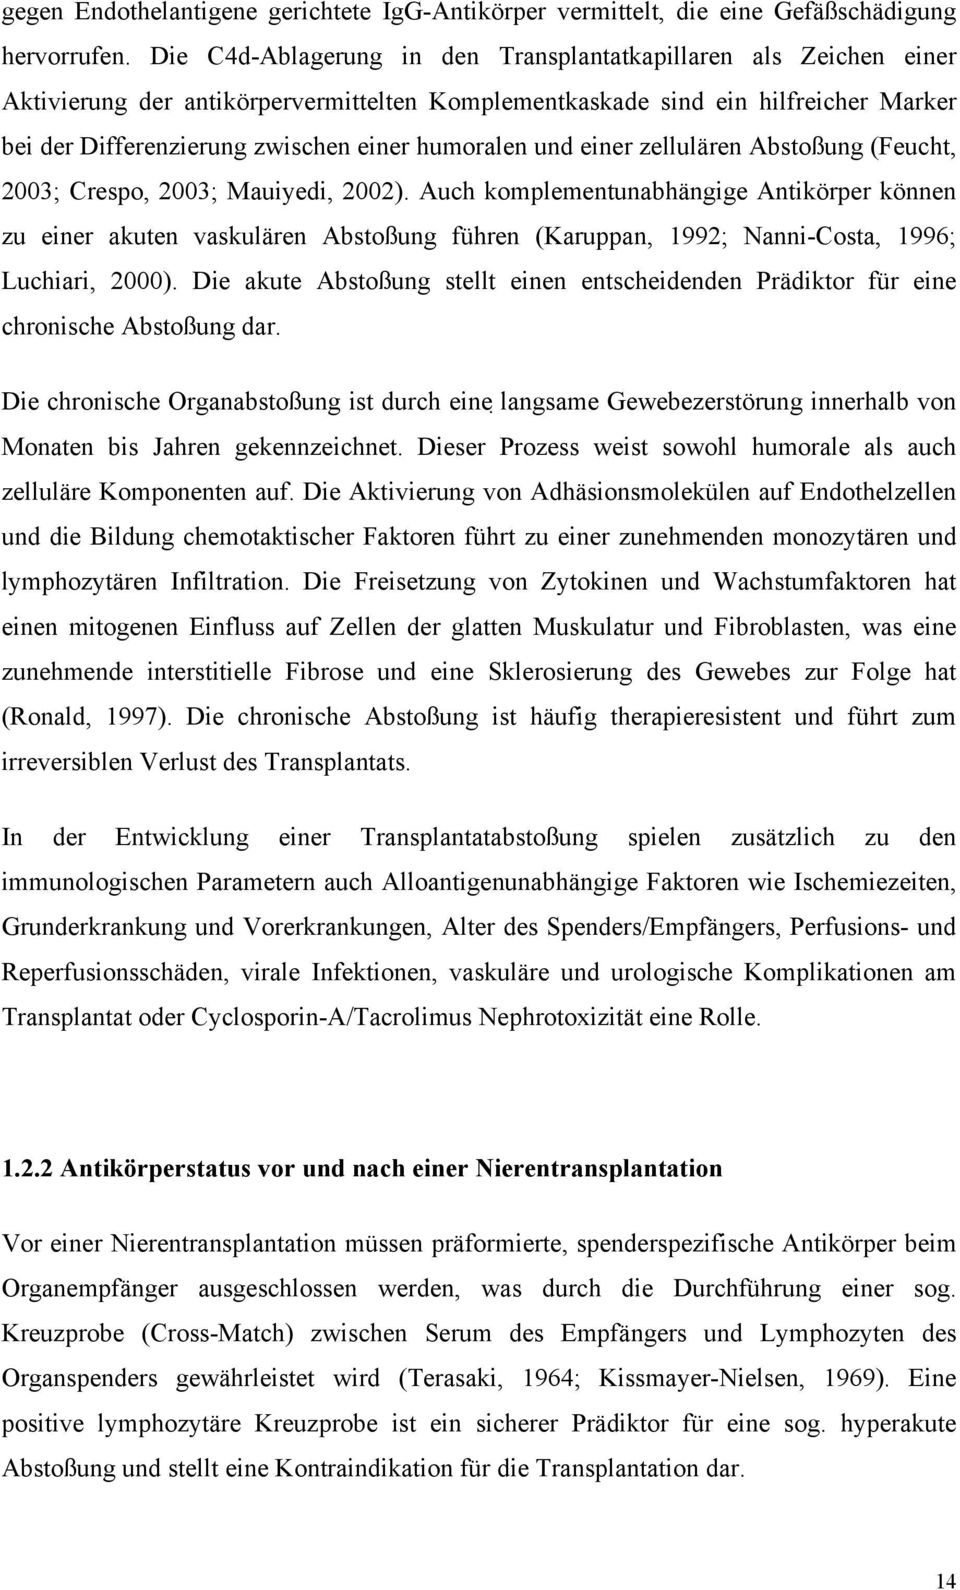 humoralen und einer zellulären Abstoßung (Feucht, 2003; Crespo, 2003; Mauiyedi, 2002).